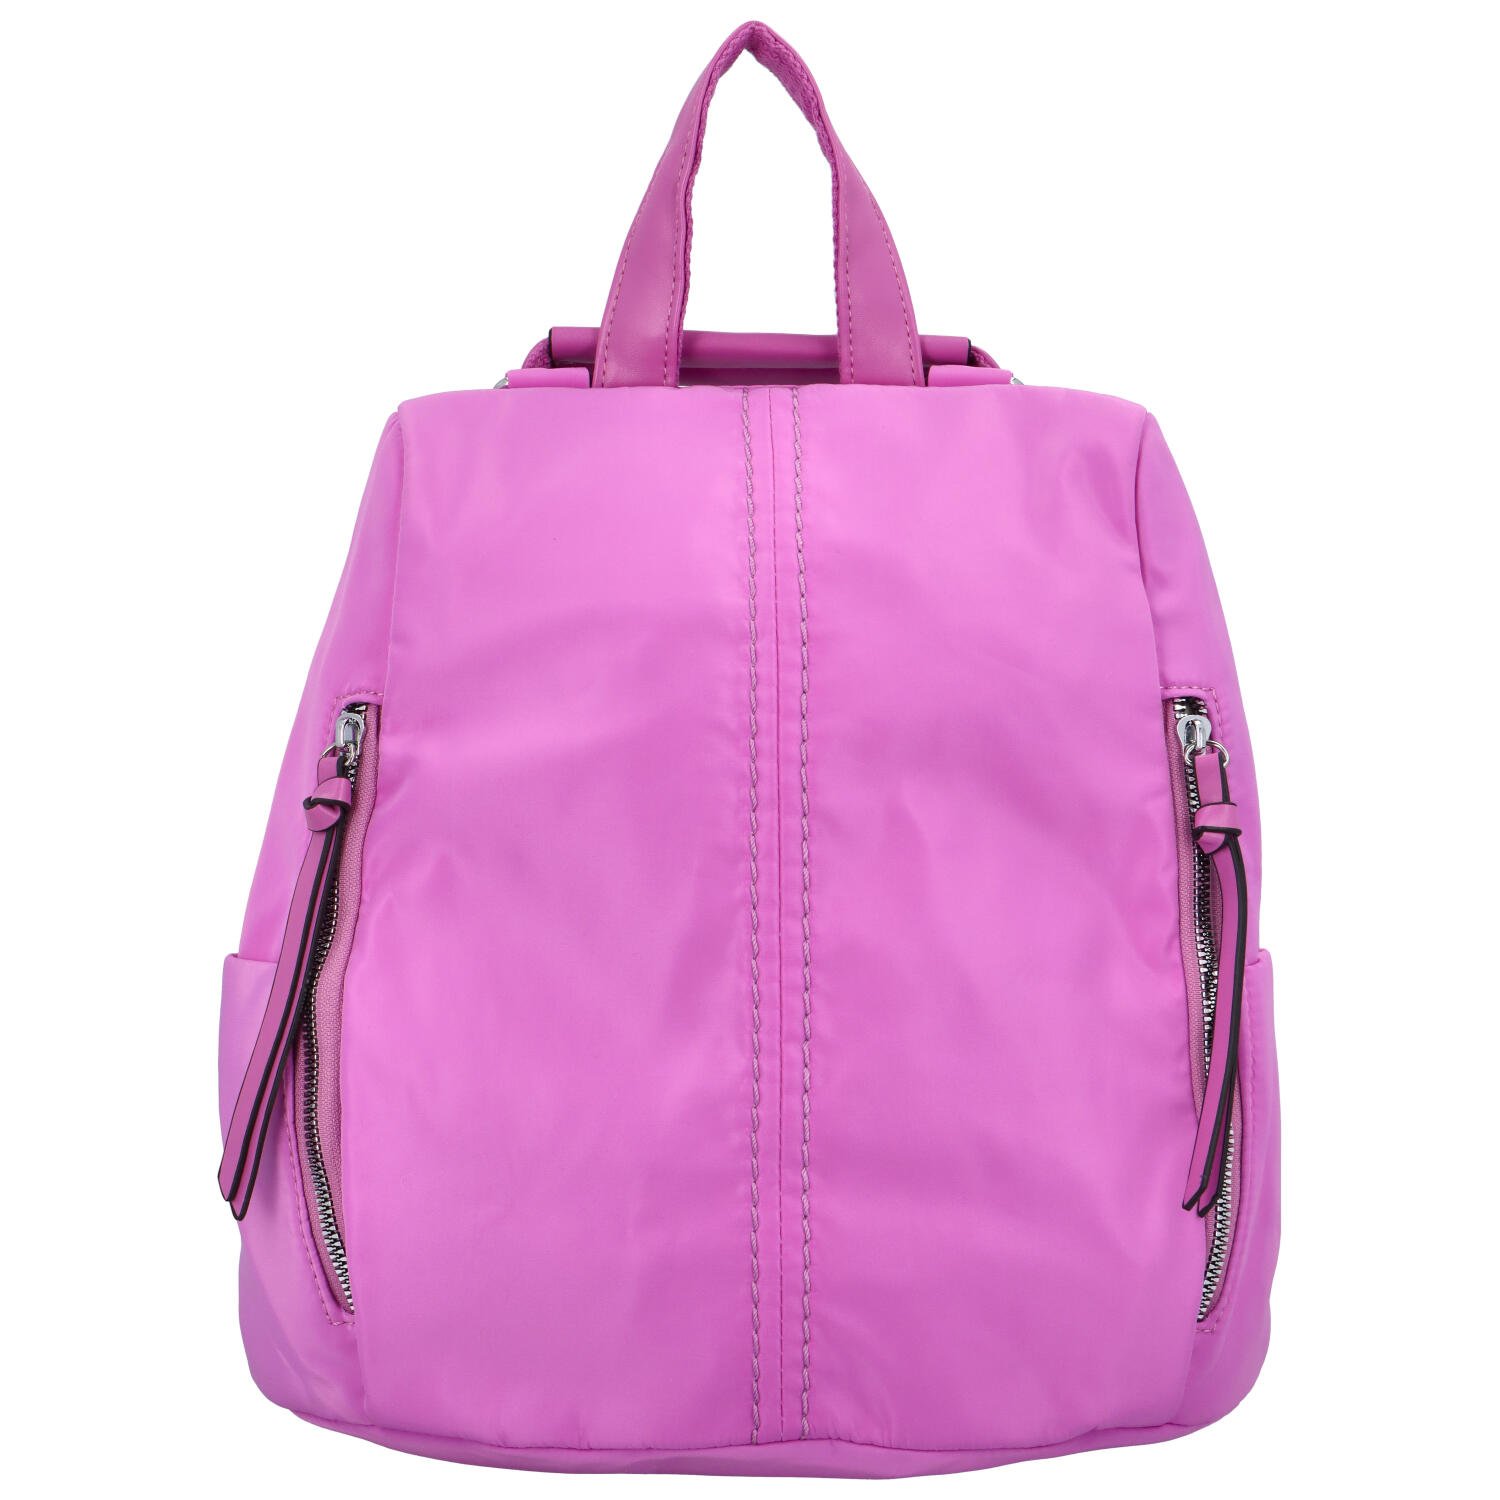 Dámský látkový batoh kabelka zářivě fialový - Paolo Bags Myrtha